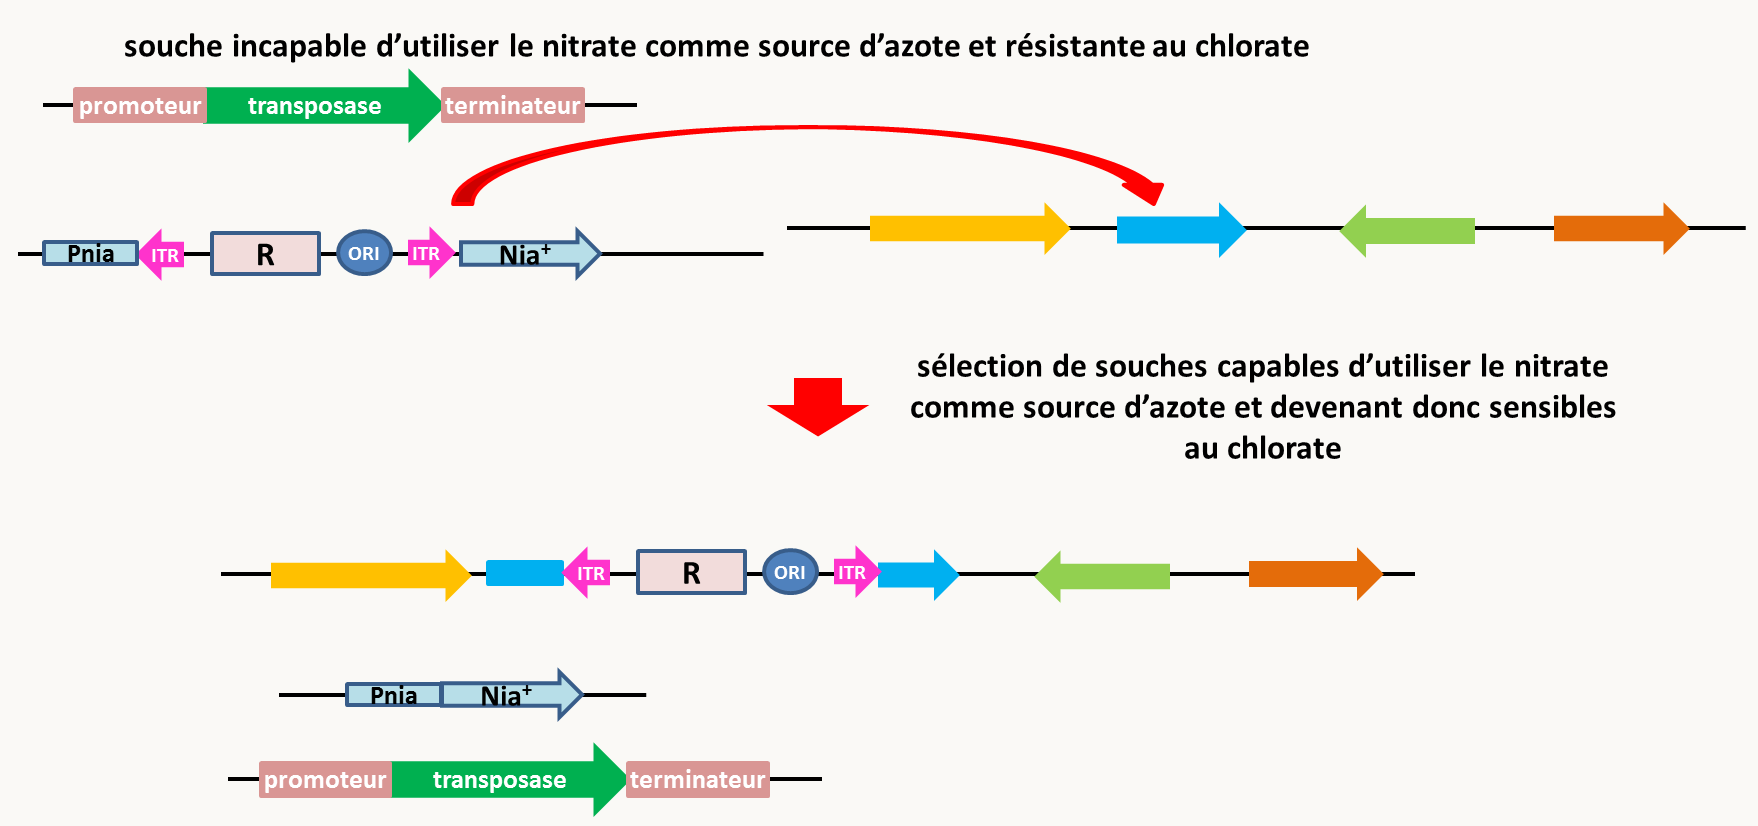 la mutagenèse insertionnelle par transposition chez les champignons. La souche de départ contient un transposon modifié contenant un marqueur de résistance bactérien et une origine de réplication fonctionnelle chez Escherichia coli. Il est inséré entre le promoteur et la séquence codante du gène nia codant pour la réductase des nitrates. Elle contient aussi la transposase sous le contrôle d'un promoteur modulable. Du fait de l'insertion du transposons, le gène nia n'est pas exprimé; la souche est donc incapable d'utiliser le nitrate comme source d'azote (elle est aussi résistante au chlorate ce qui a permis de sélectionner l'insertion du transposon dans le gène nia). L'expression de la transposase est induite via le promoteur modulable. Elle permet l'excision du transposon, ce qui est facilement sélectionnable en recherchant les souches capable d'utiliser le nitrate comme source d'azote. Dans une large fraction de ces souches excisées, le transposon s'est réinséré au hasard dans le génome. L'identification de la région dans laquelle le transposons s'est réinséré est facile grâce au marqueur de résistance bactérien et à l'origine de réplication (voir figure 84).